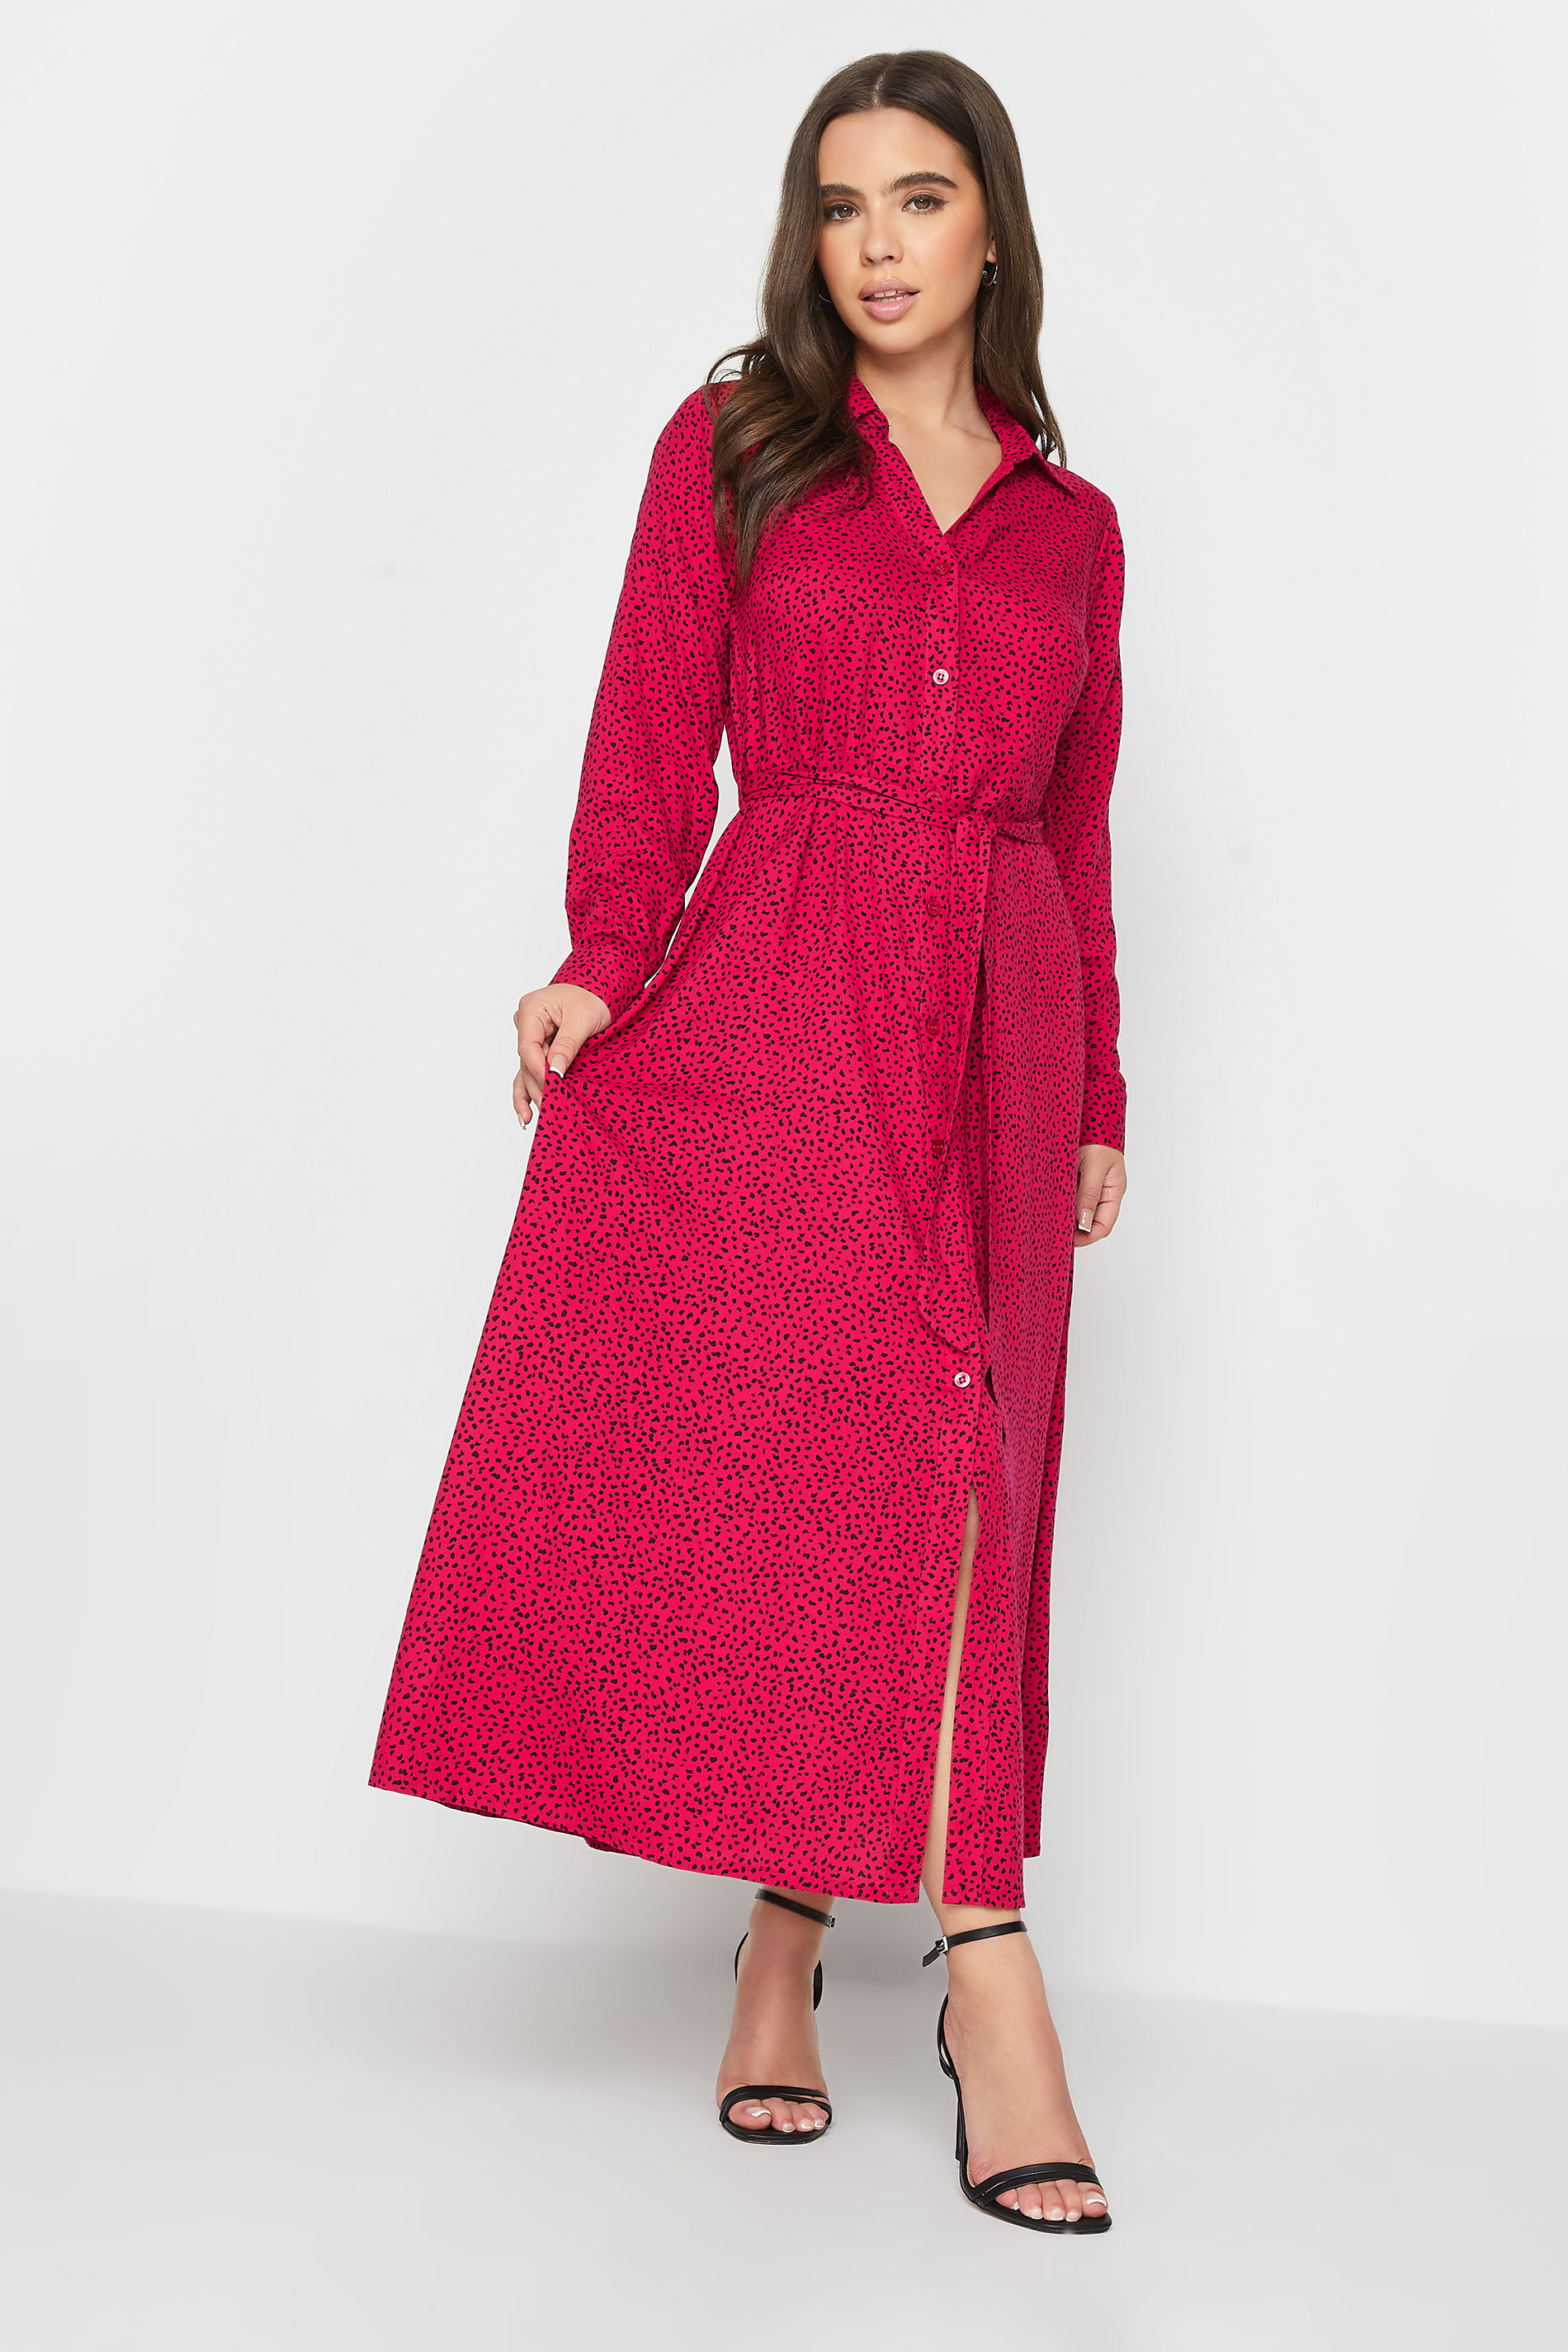 Petite Red Dalmatian Print Long Sleeve Maxi Shirt Dress | PixieGirl 1